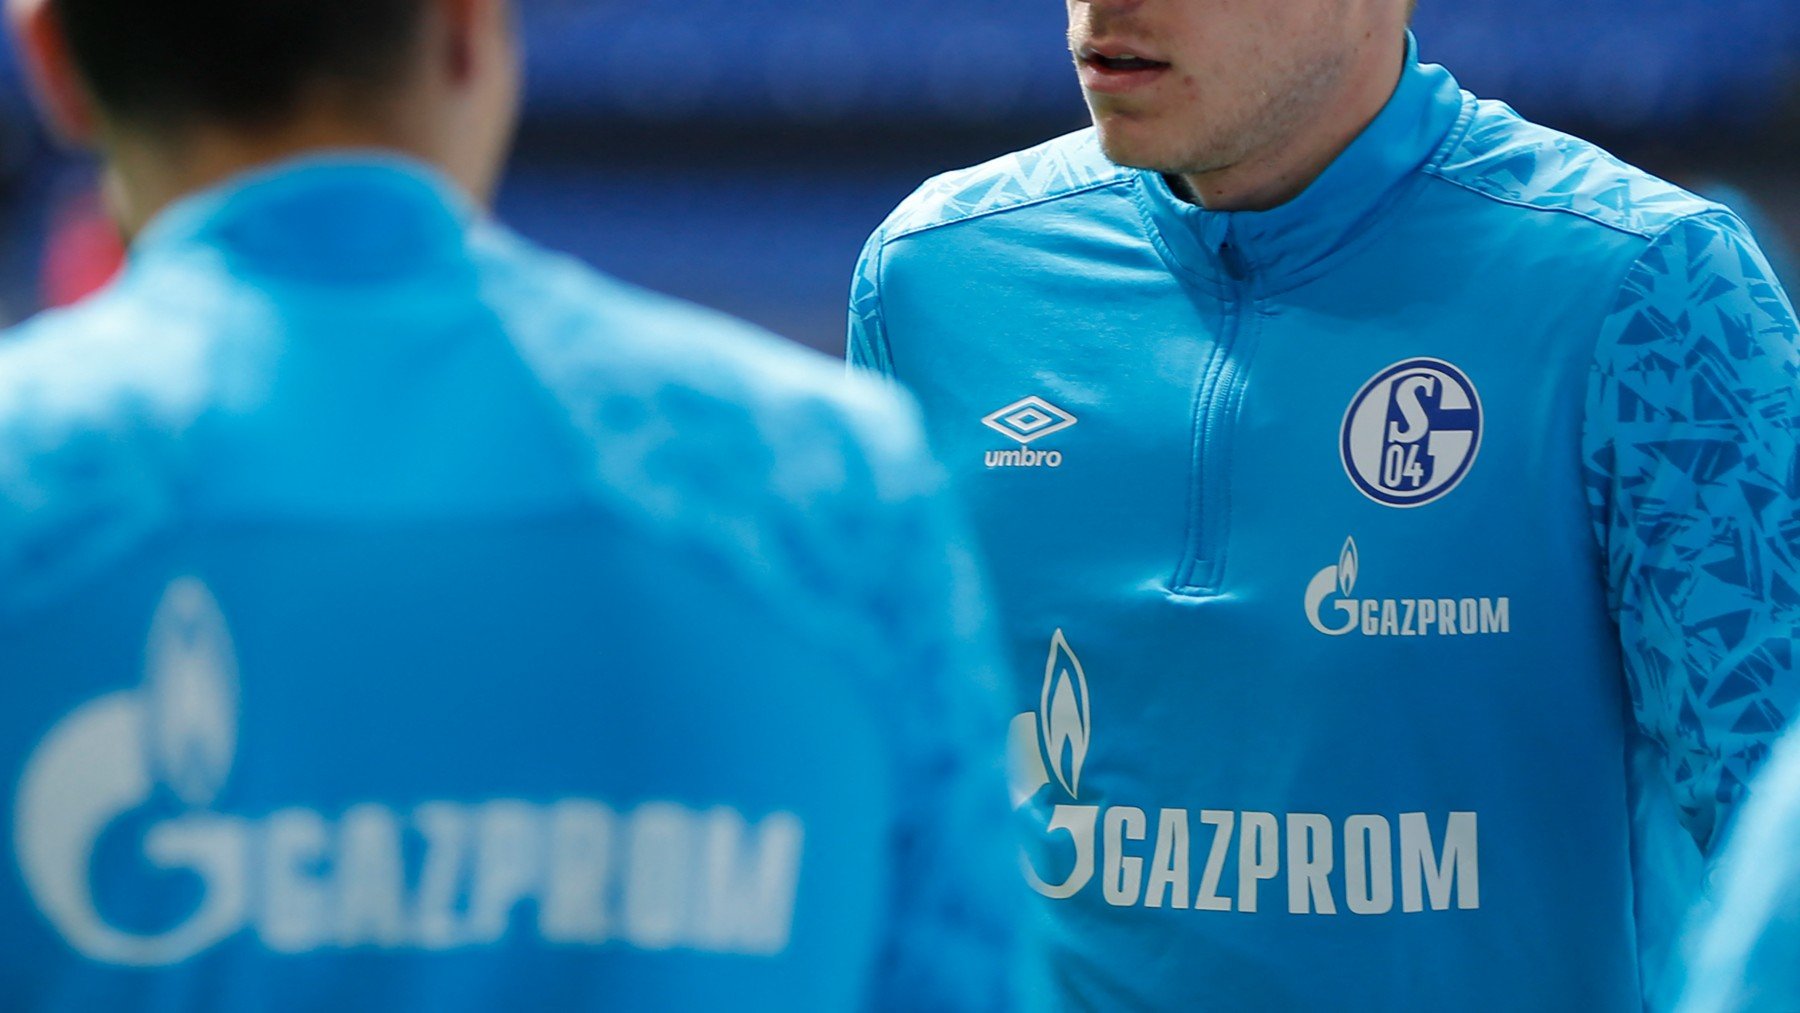 El Schalke luce publicidad de Gazprom desde 2013. (AFP)